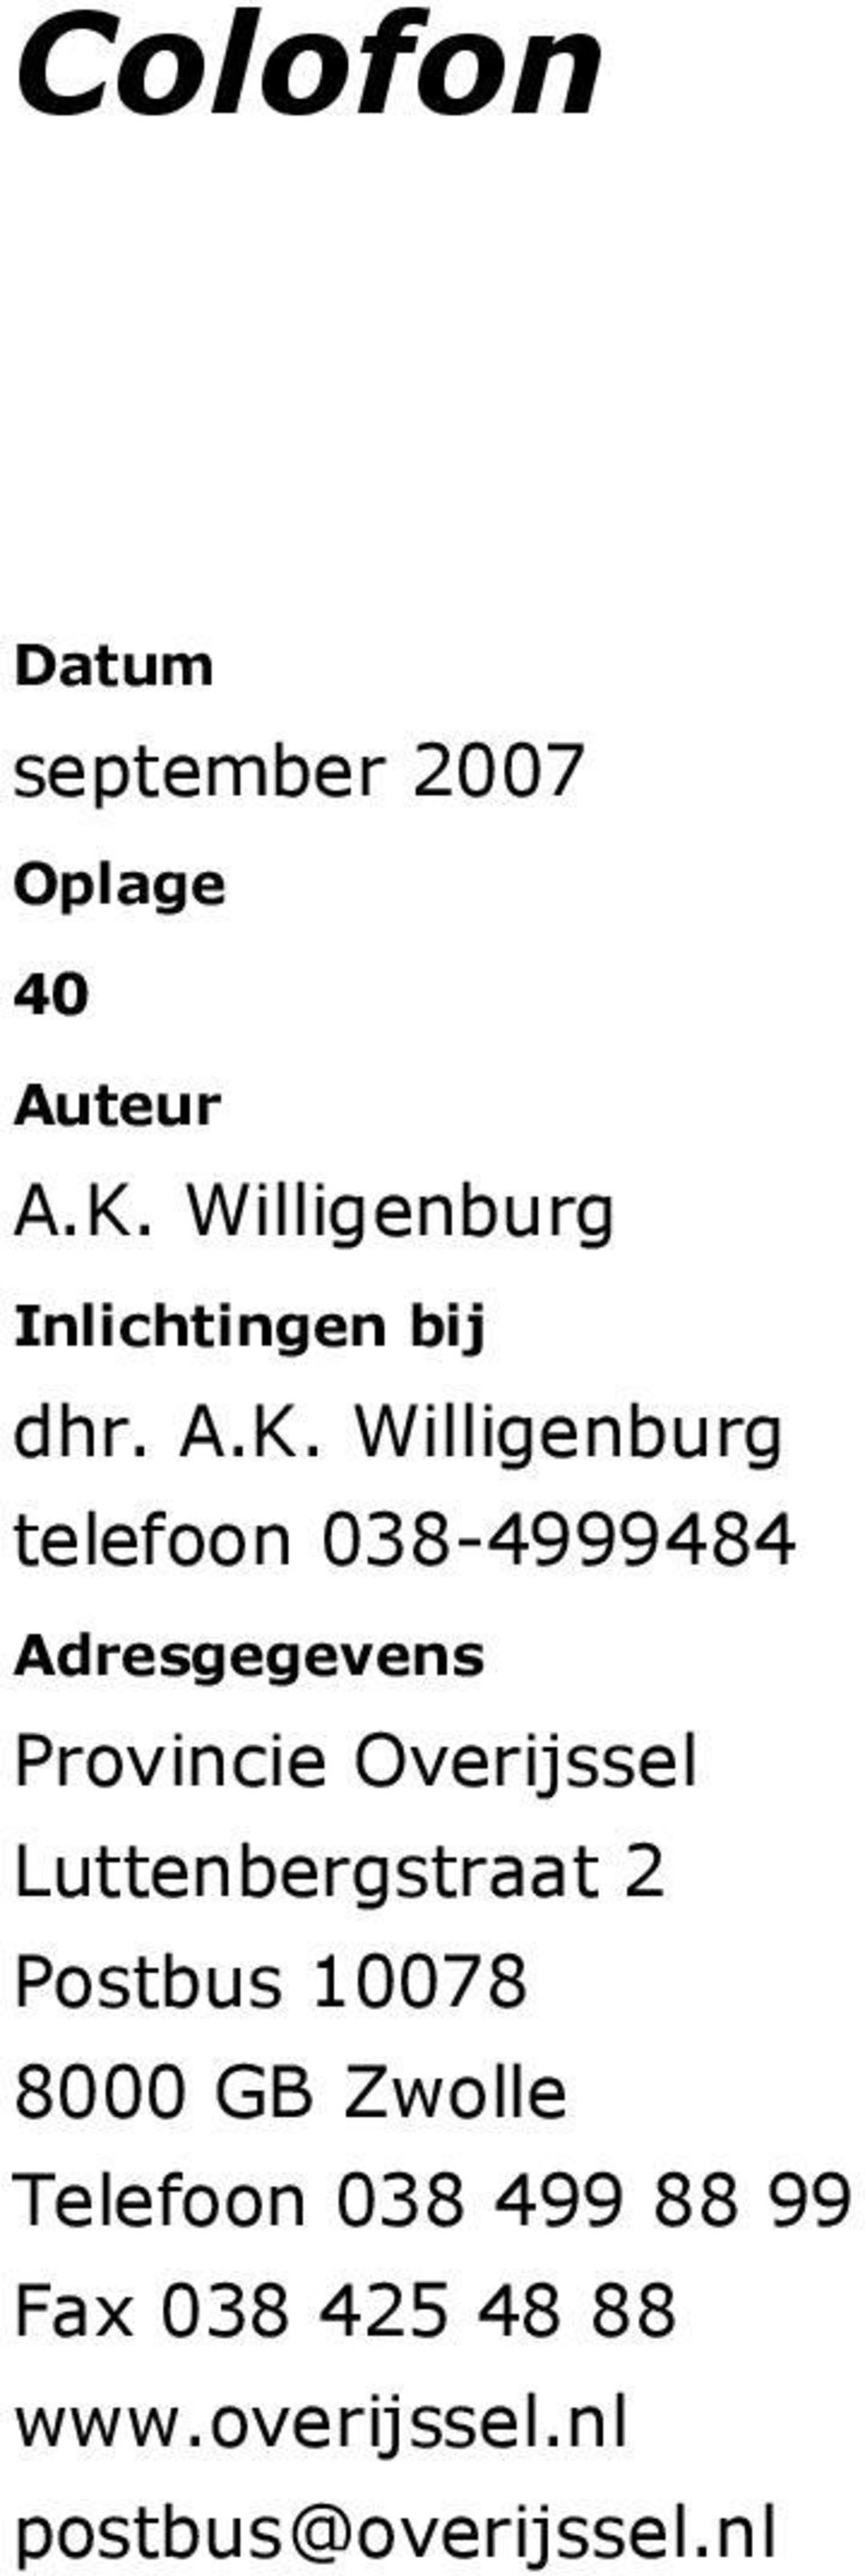 Willigenburg telefoon 038-4999484 Adresgegevens Provincie Overijssel